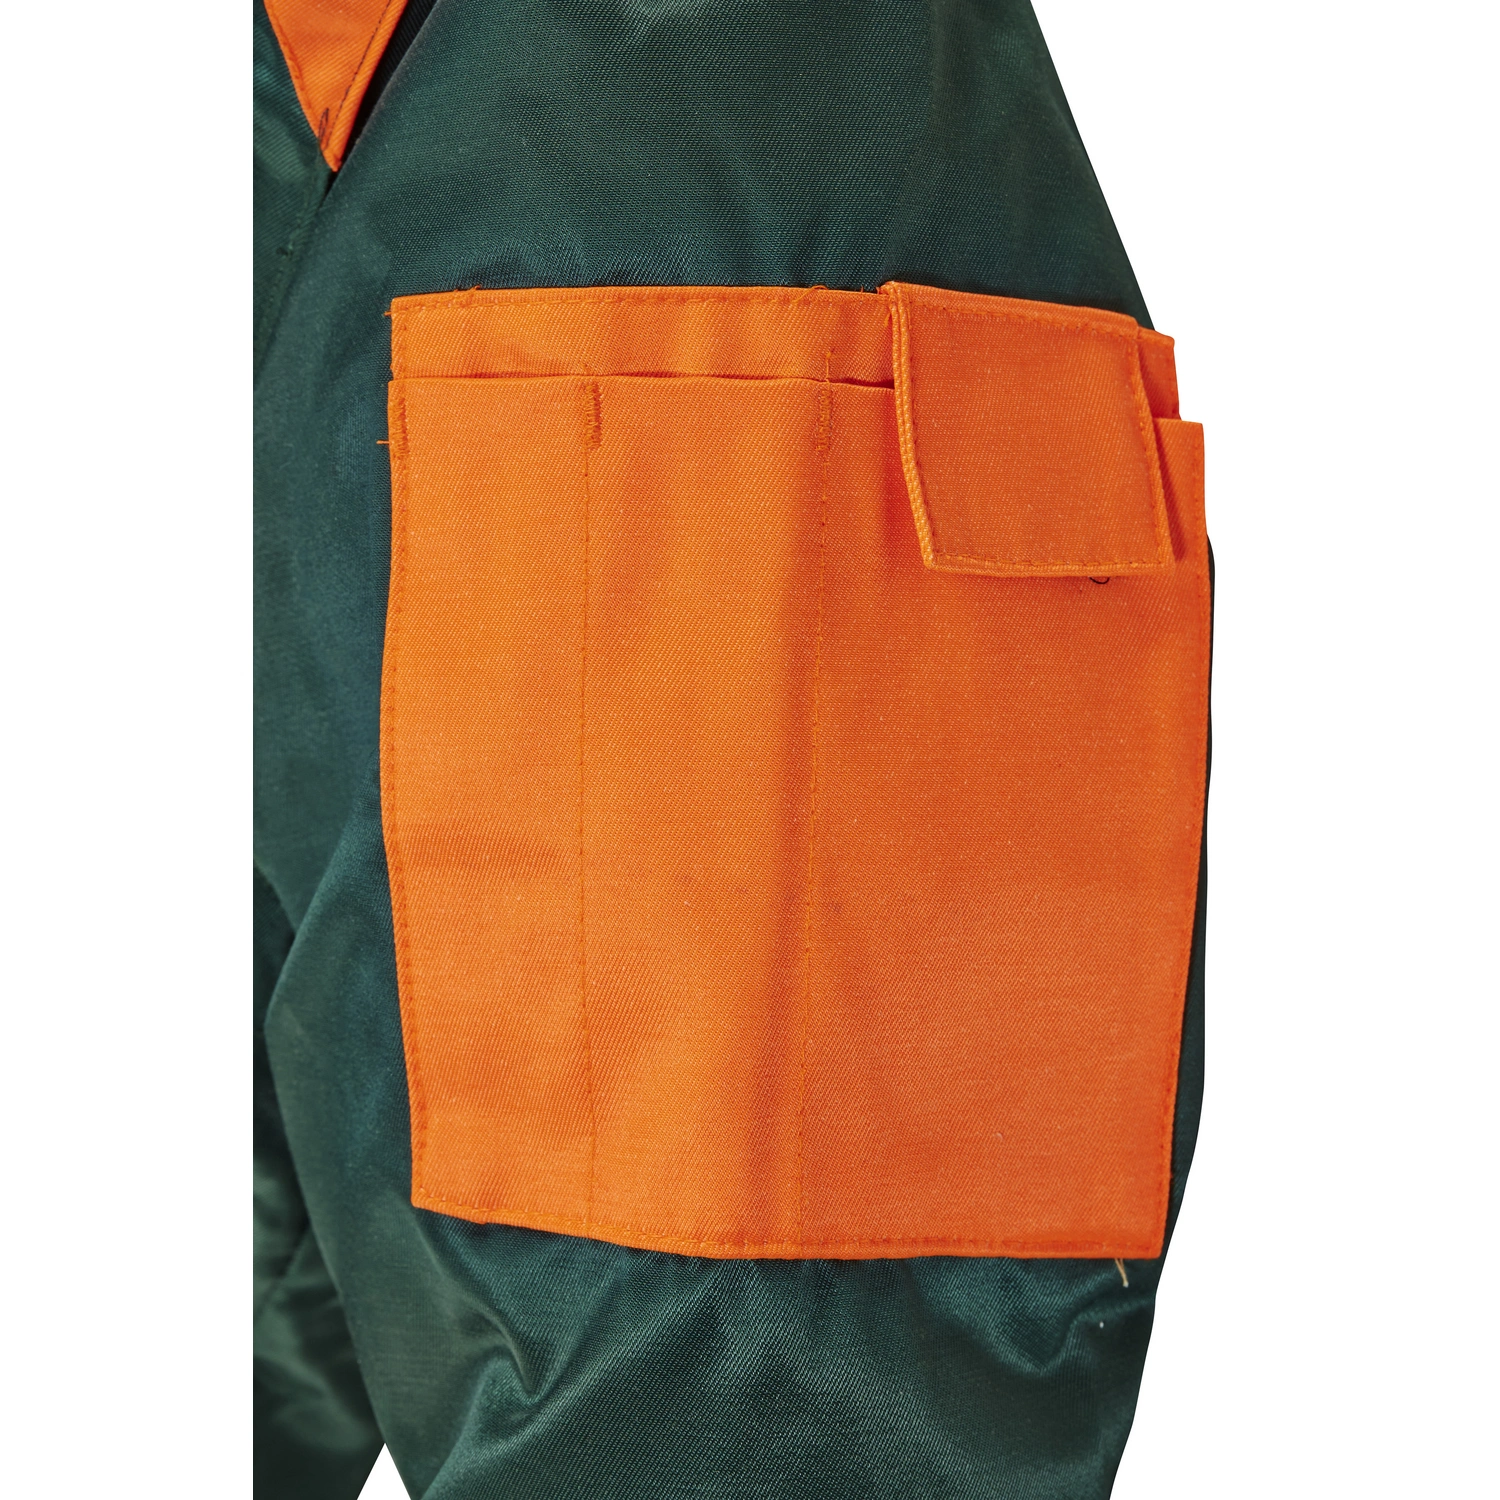 BULLSTAR Pilotenjacke, grün/orange, Polyester/Baumwolle, Gr. XXXL | Arbeitsjacken